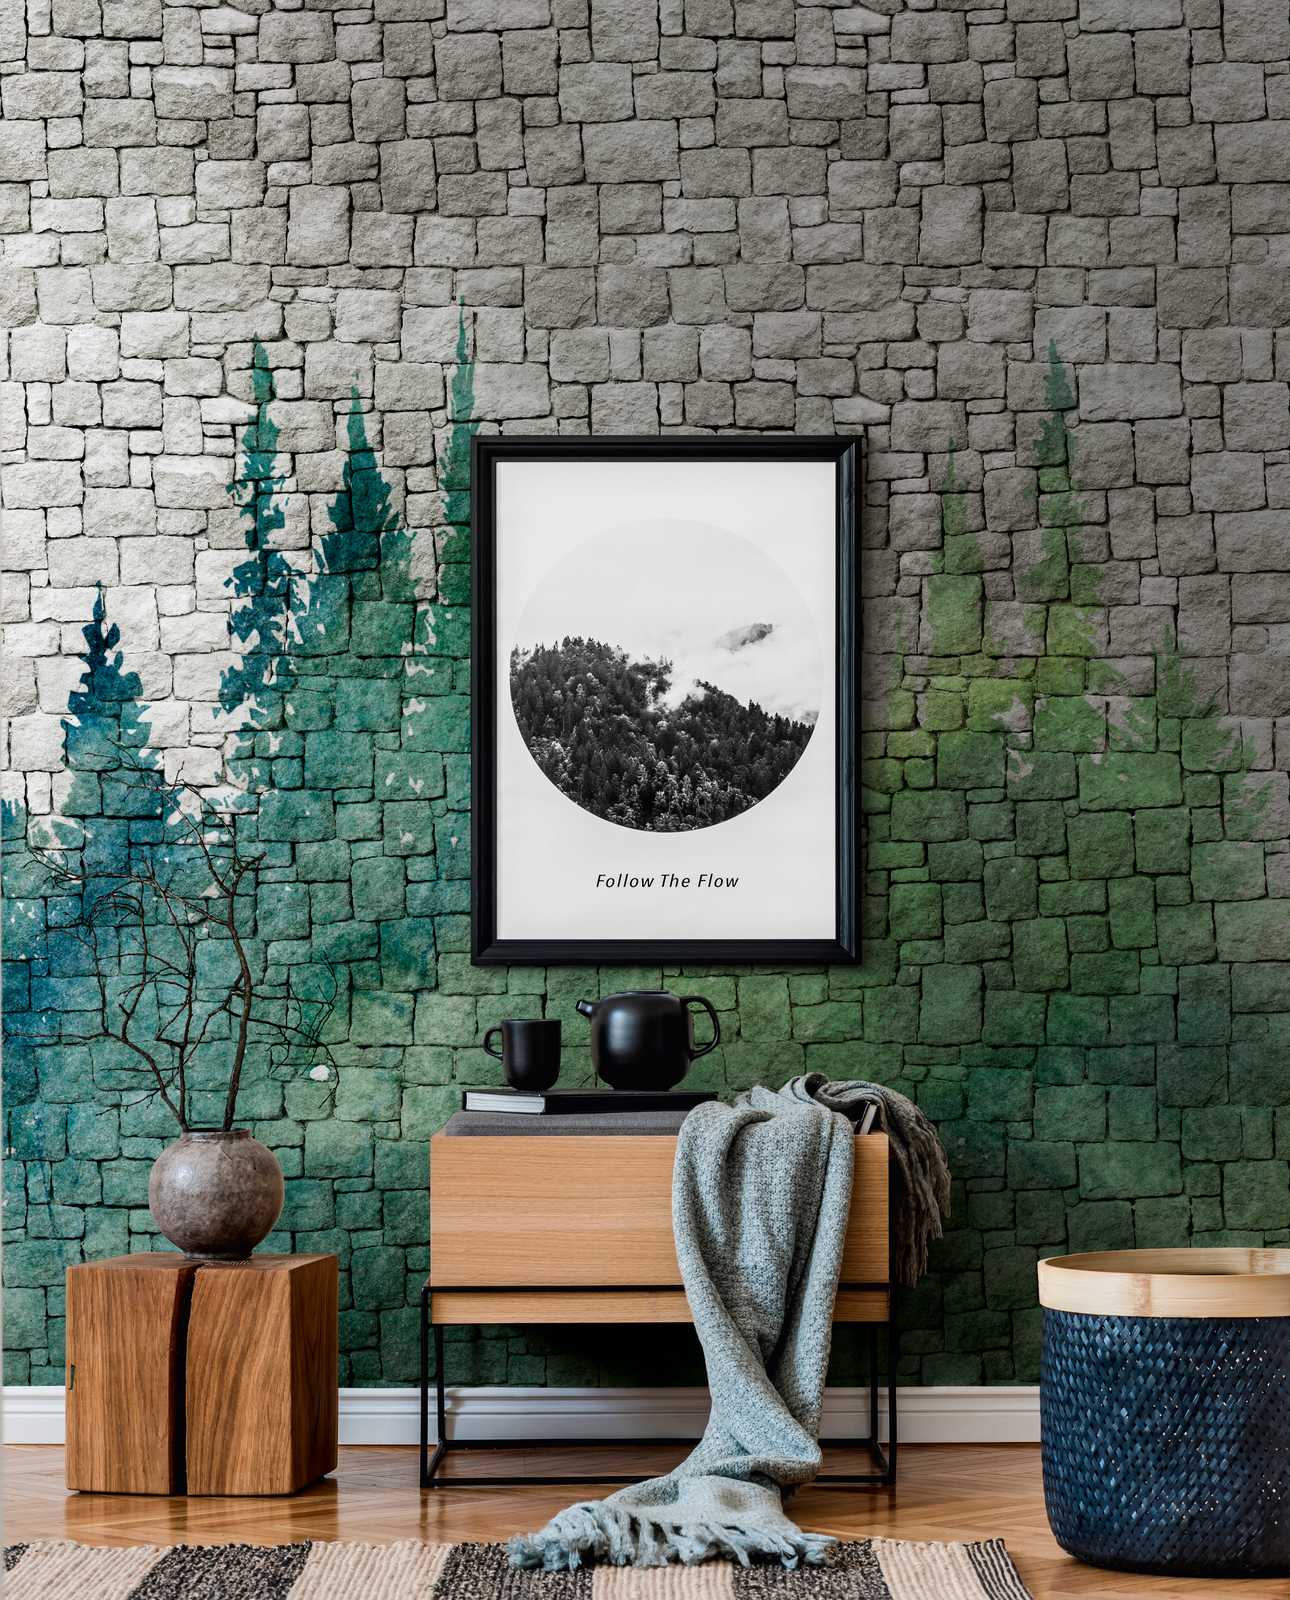             behang nieuwigheid | motief behang stenen muur patroon & aquarel bos
        